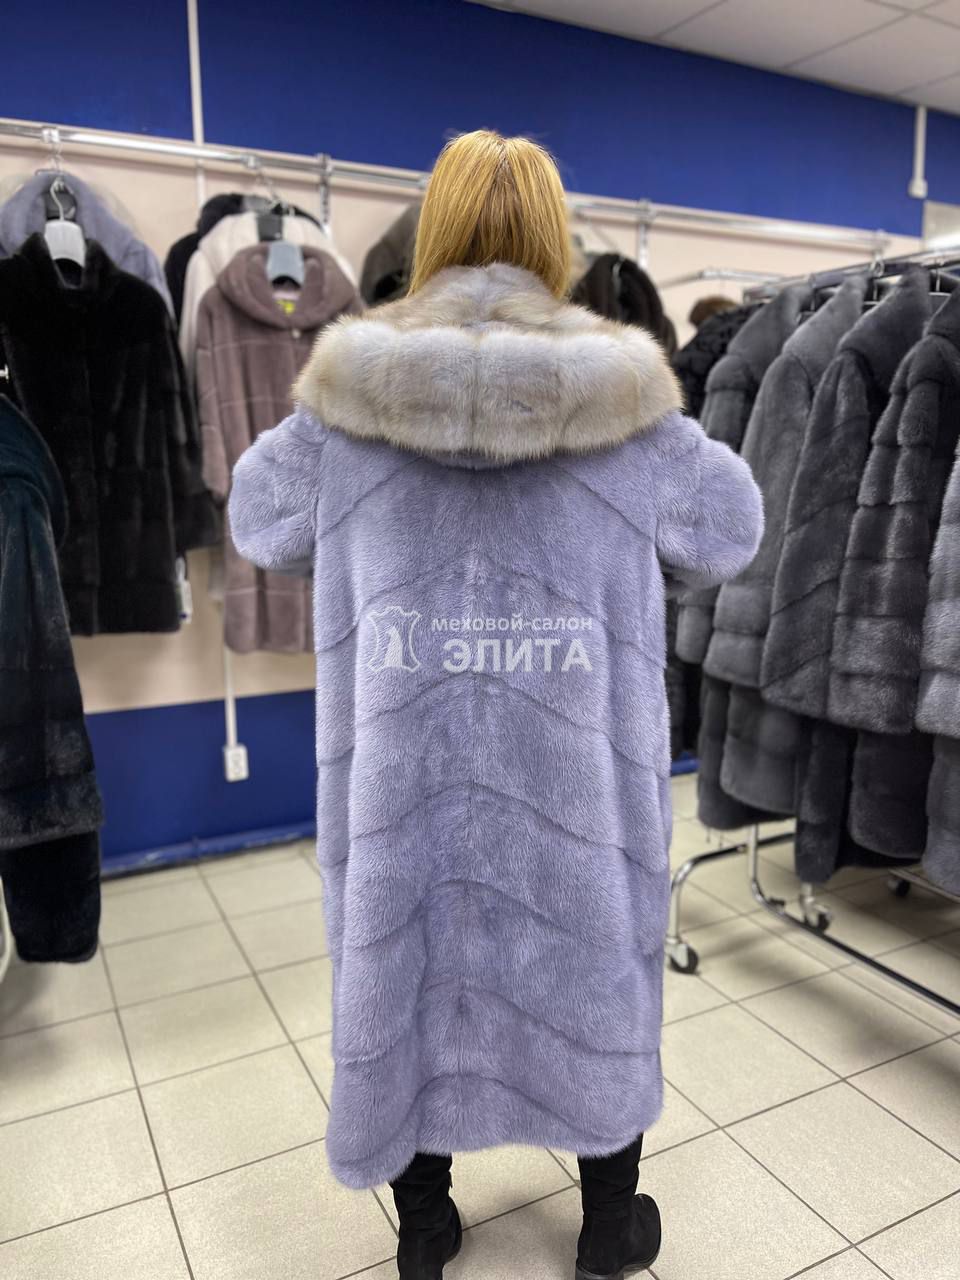 Пальто из норки м. S18237, р-р 52-54, цена 245000 рублей в интернет-магазине кожи и меха ЭЛИТА. Вид 2